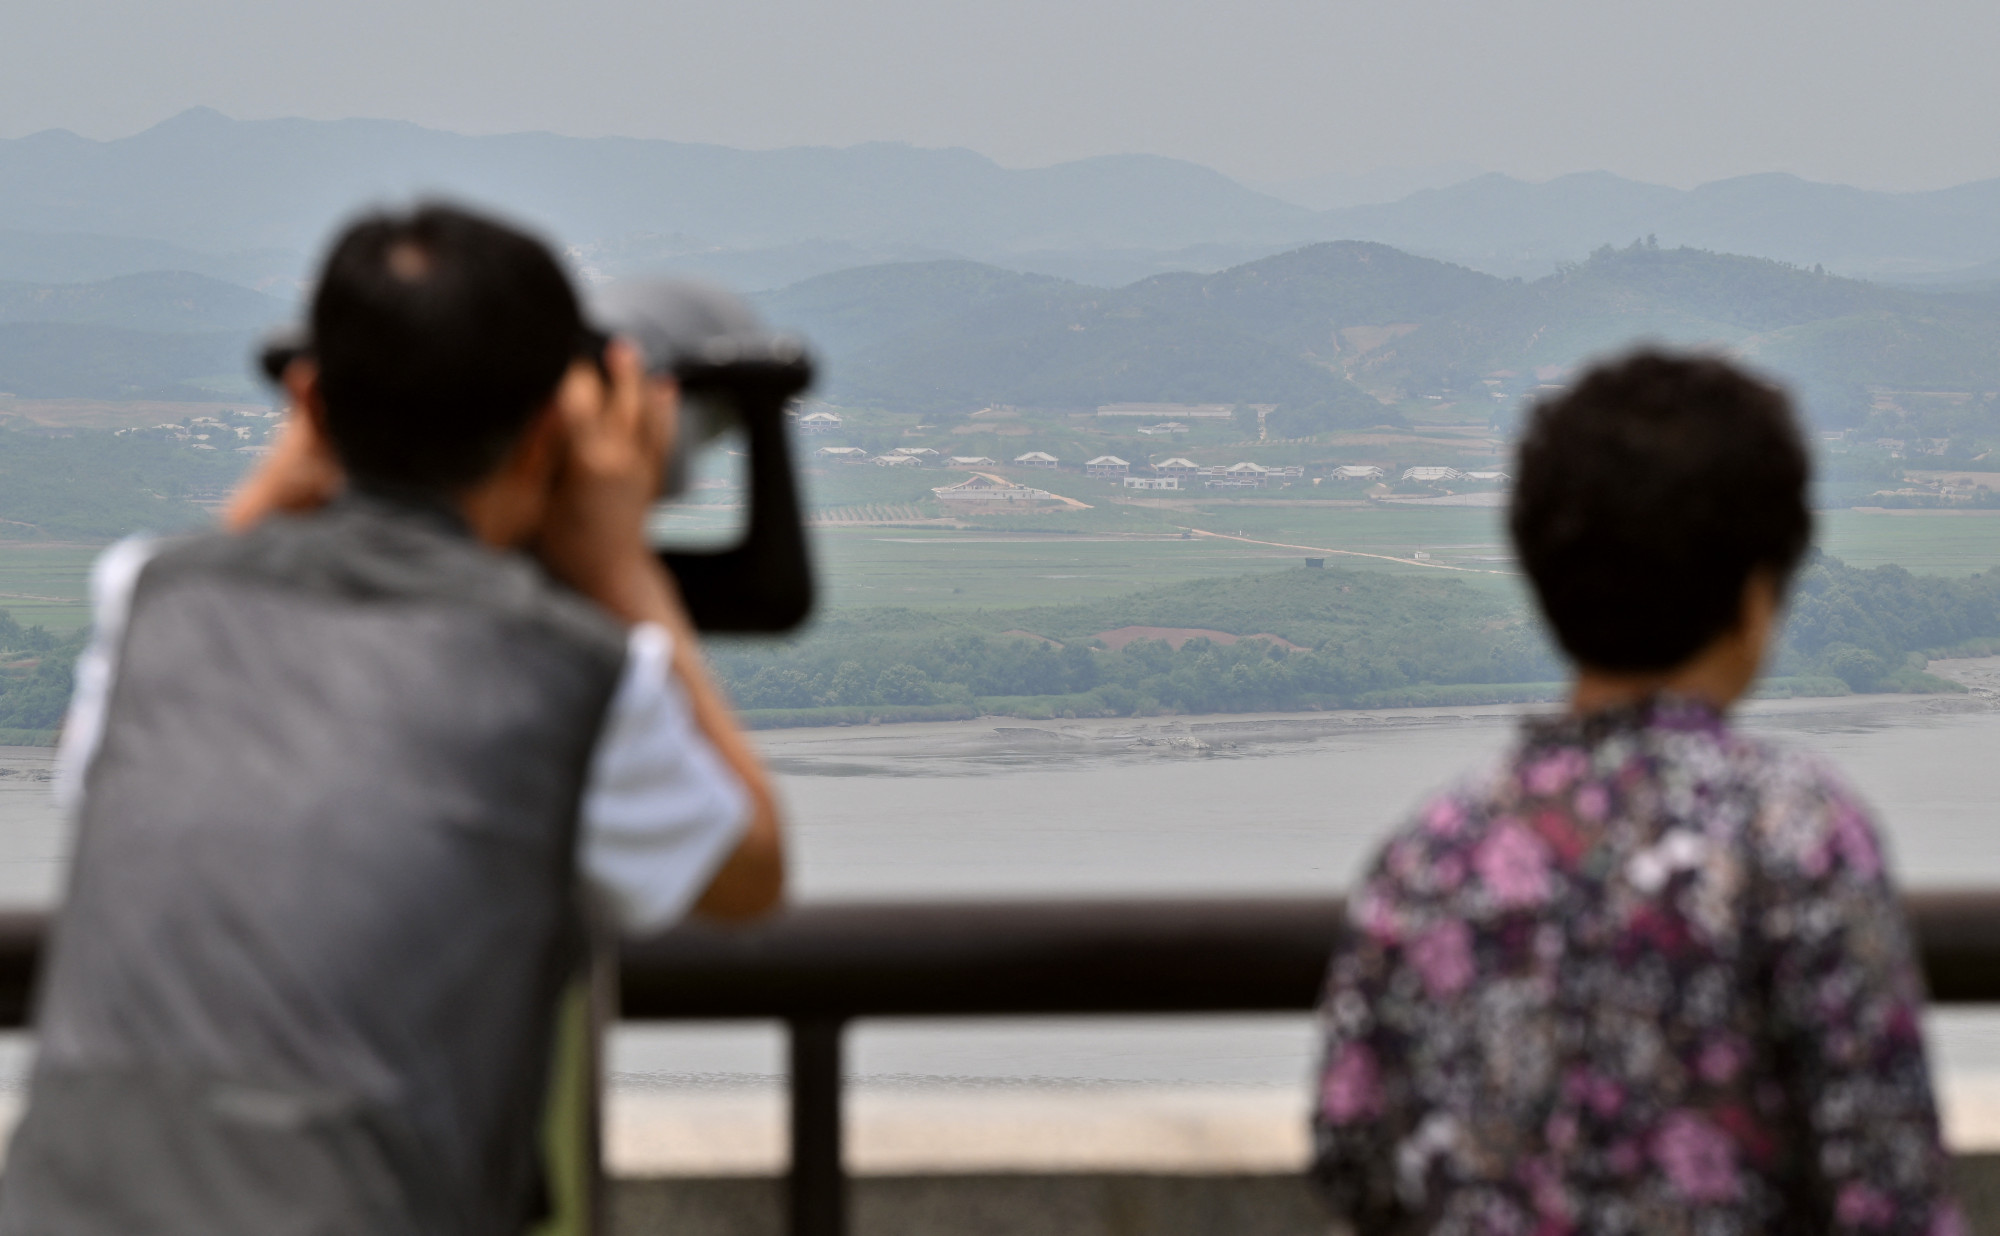 Csak figyelmeztető lövések hatására vonultak vissza a határsértő észak-koreai katonák